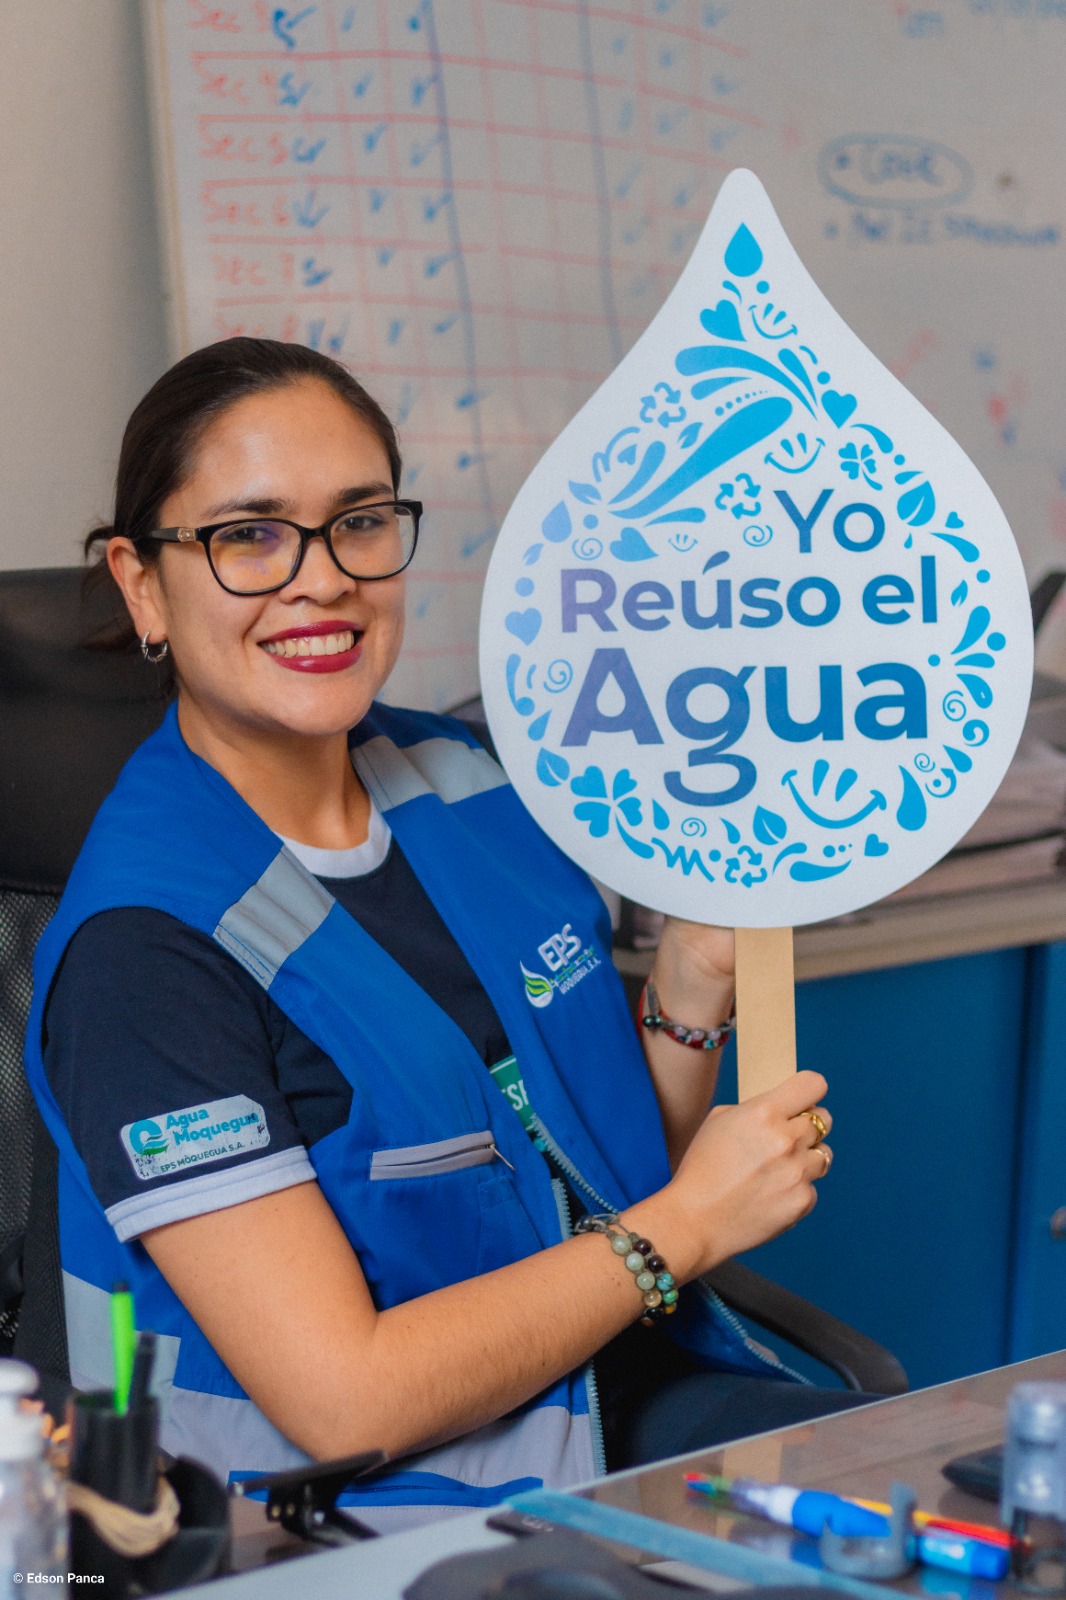 EPS Moquegua iniciará la campaña de educación sanitaria “Yo reúso el agua”